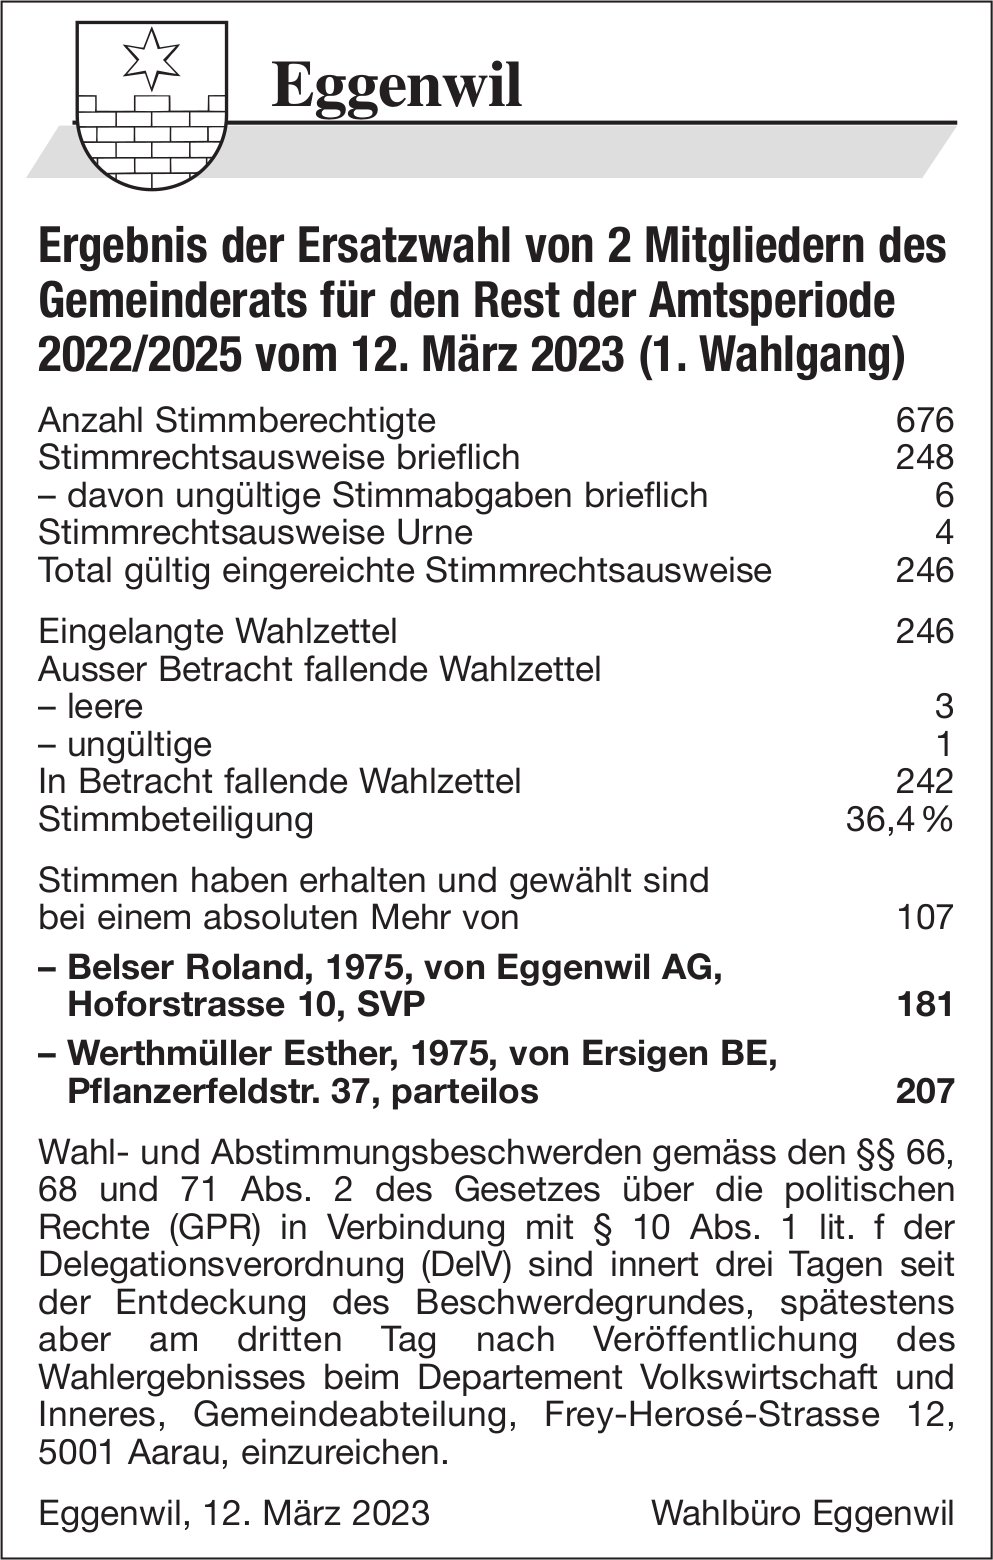 Eggenwil - Ergebnis der Ersatzwahl von 2 Mitgliedern des Gemeinderats